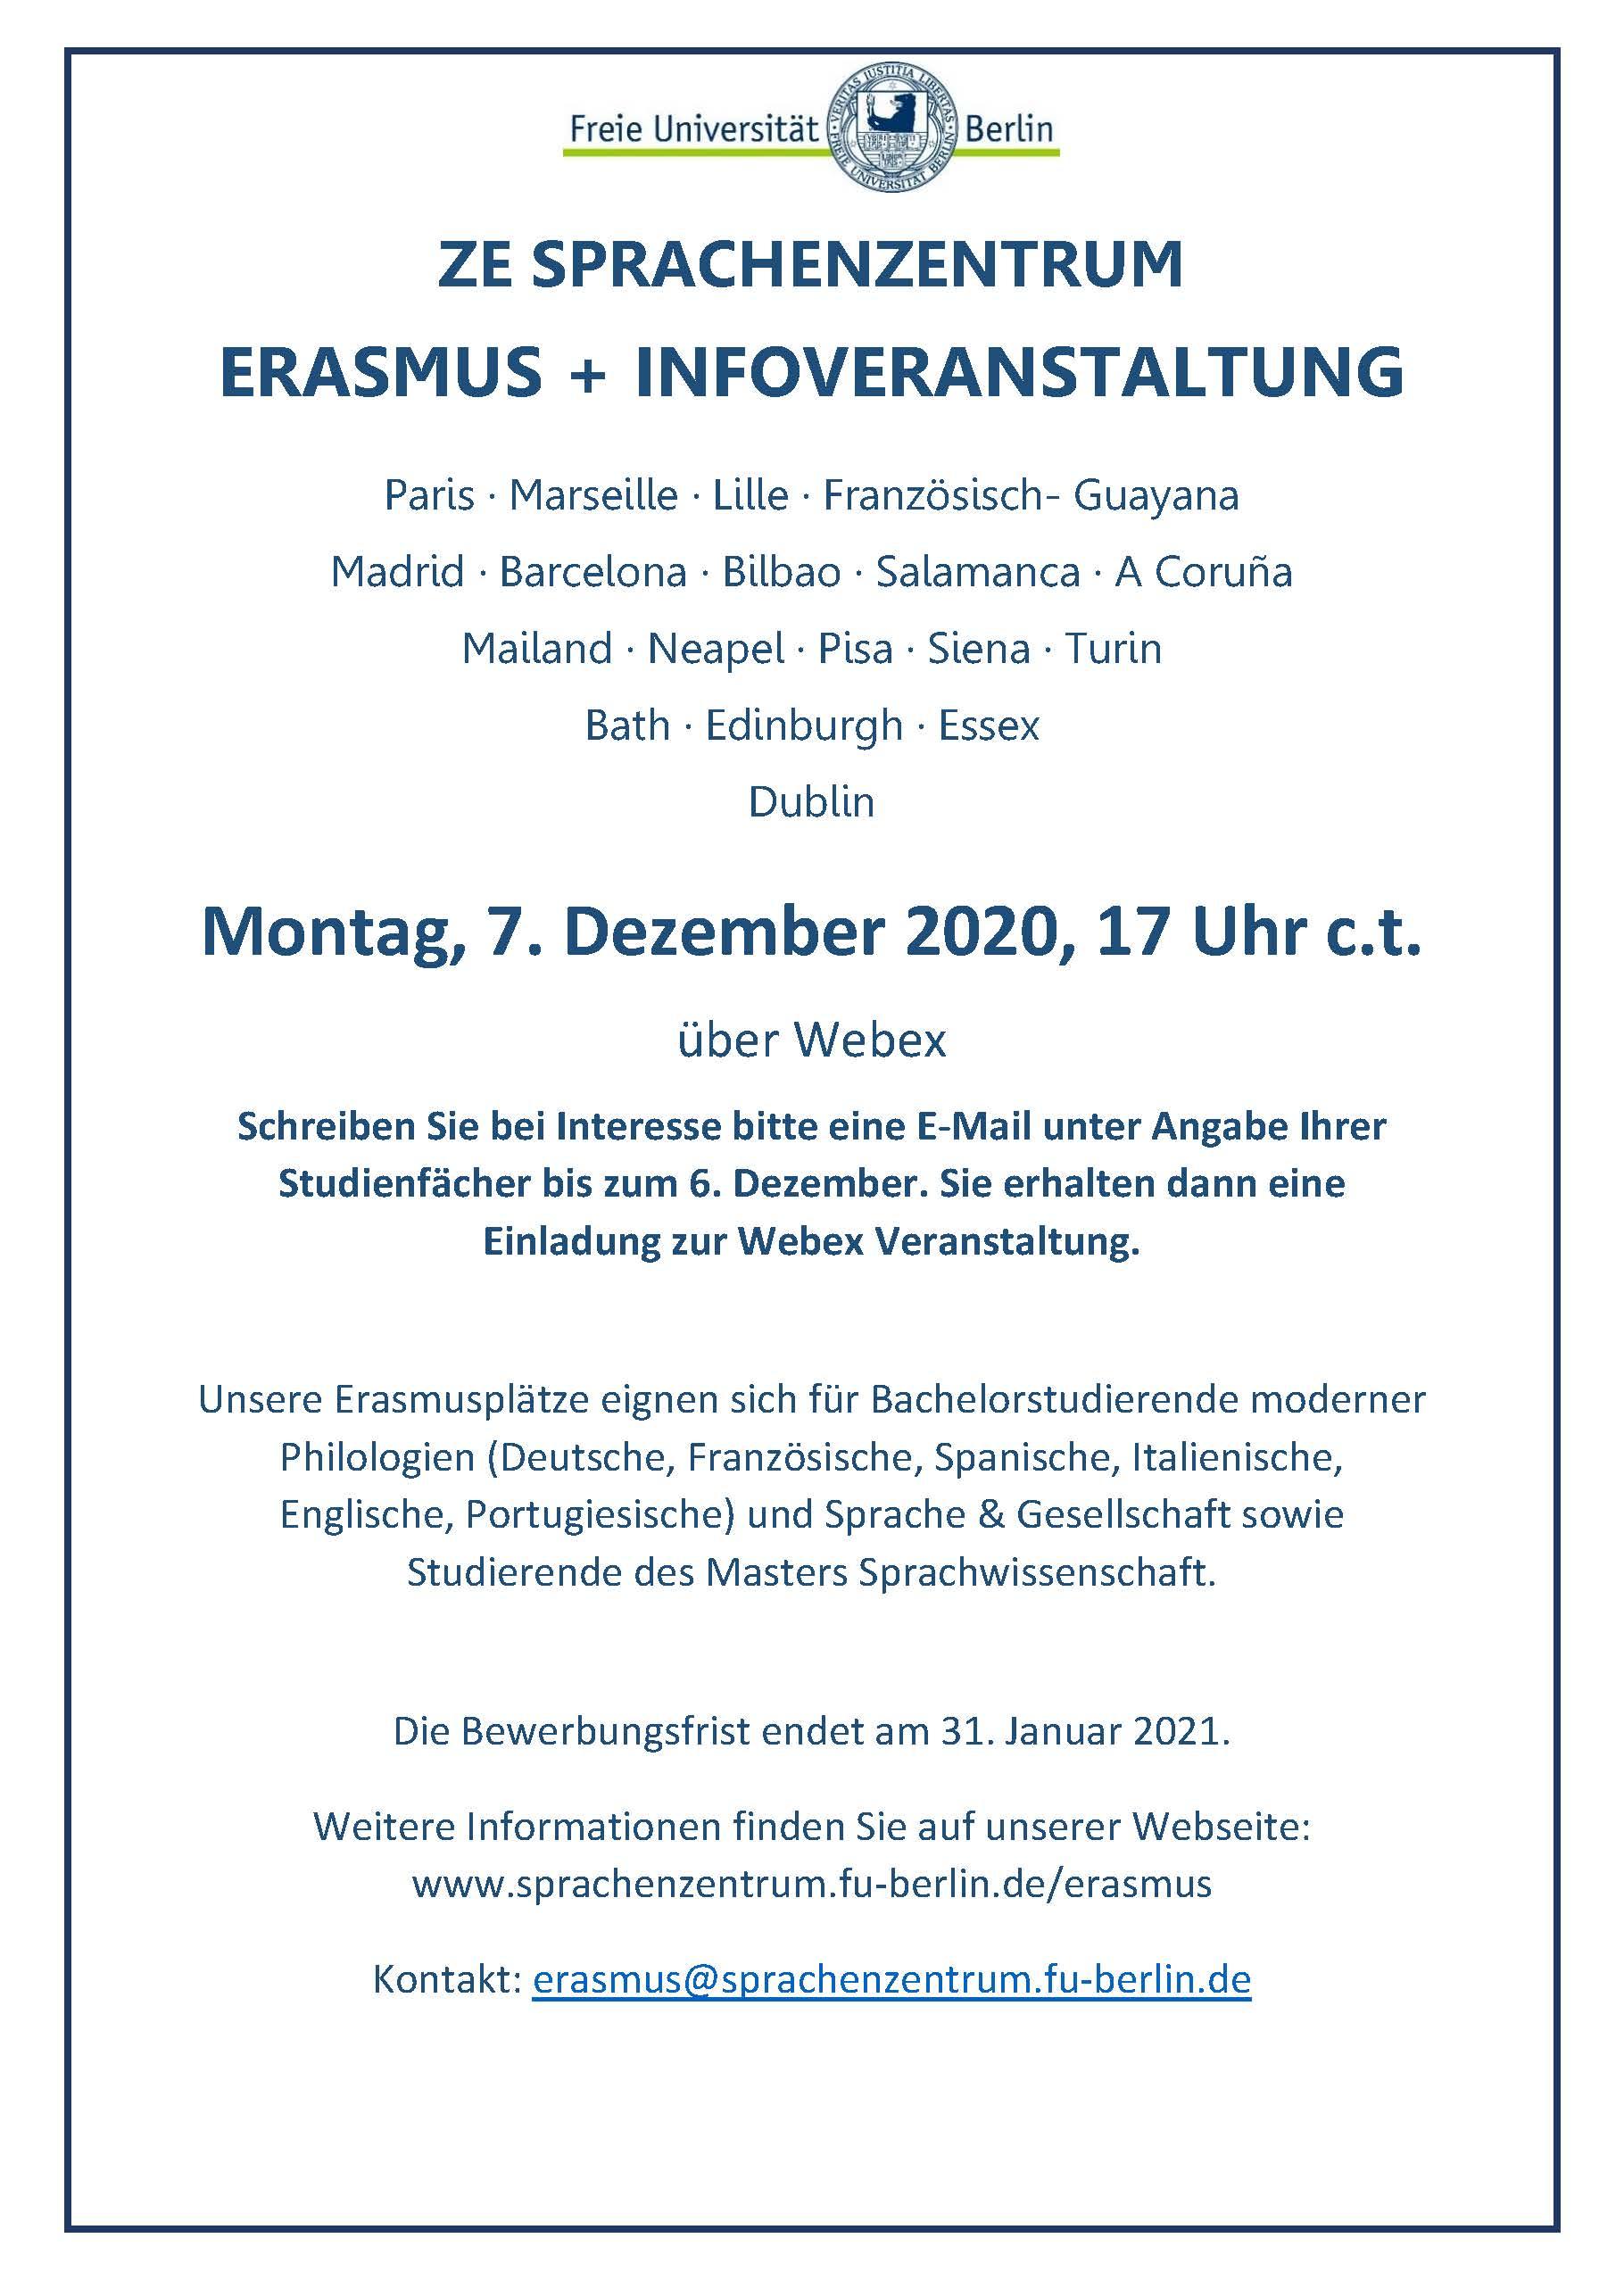 Infoveranstaltung Erasmus+ Sprachenzentrum 2020